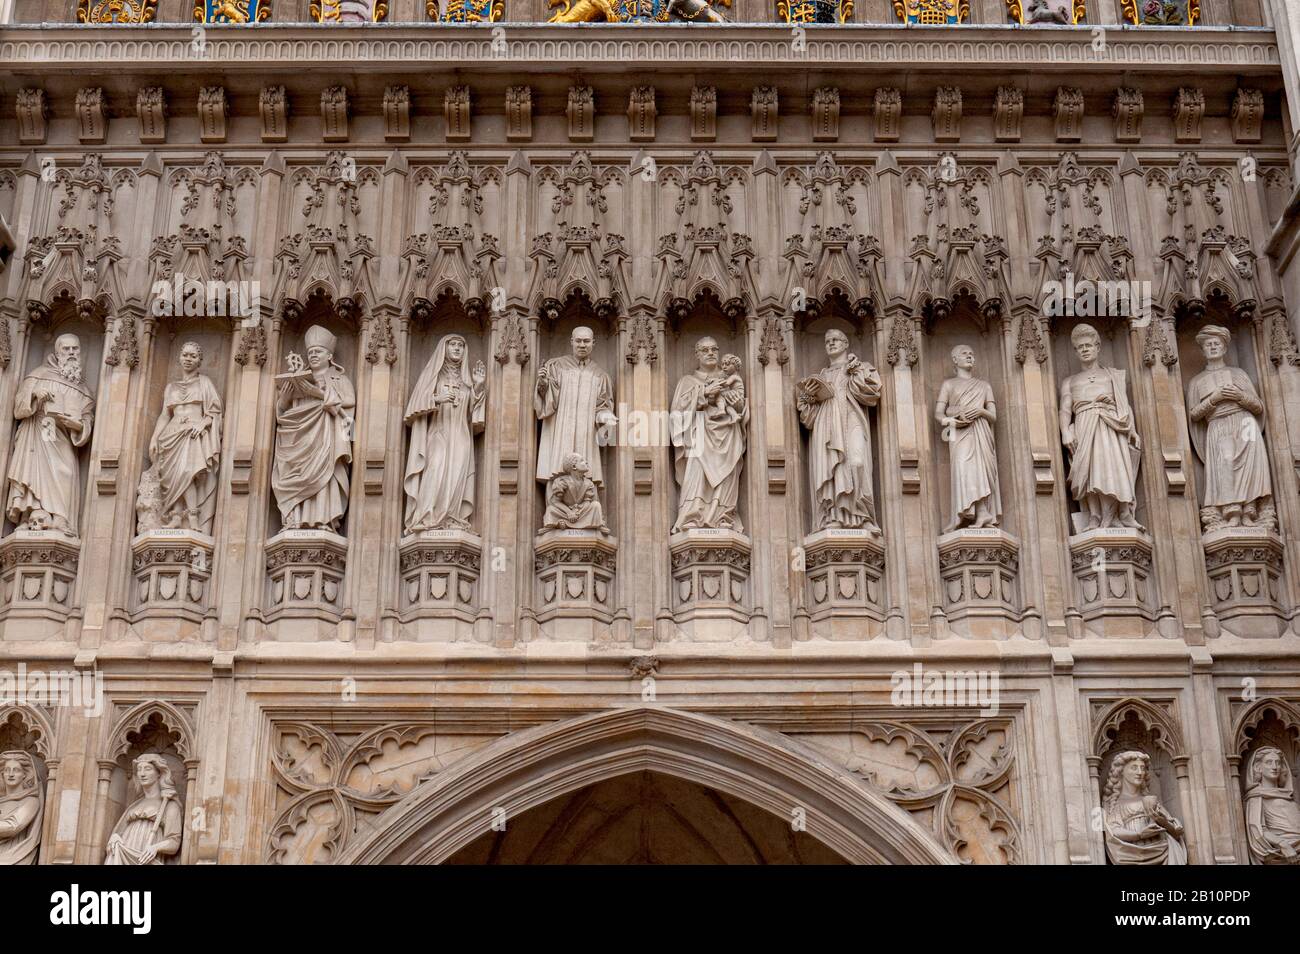 La fachada de la Abadía de Westminster se encuentra sobre la puerta oeste de los 'Mártires de Mártires de los Mártires de los Mártires de los Mártires de los Mártires de los Mártires de los Mártires de los Westmister, Londres, Reino Unido Foto de stock